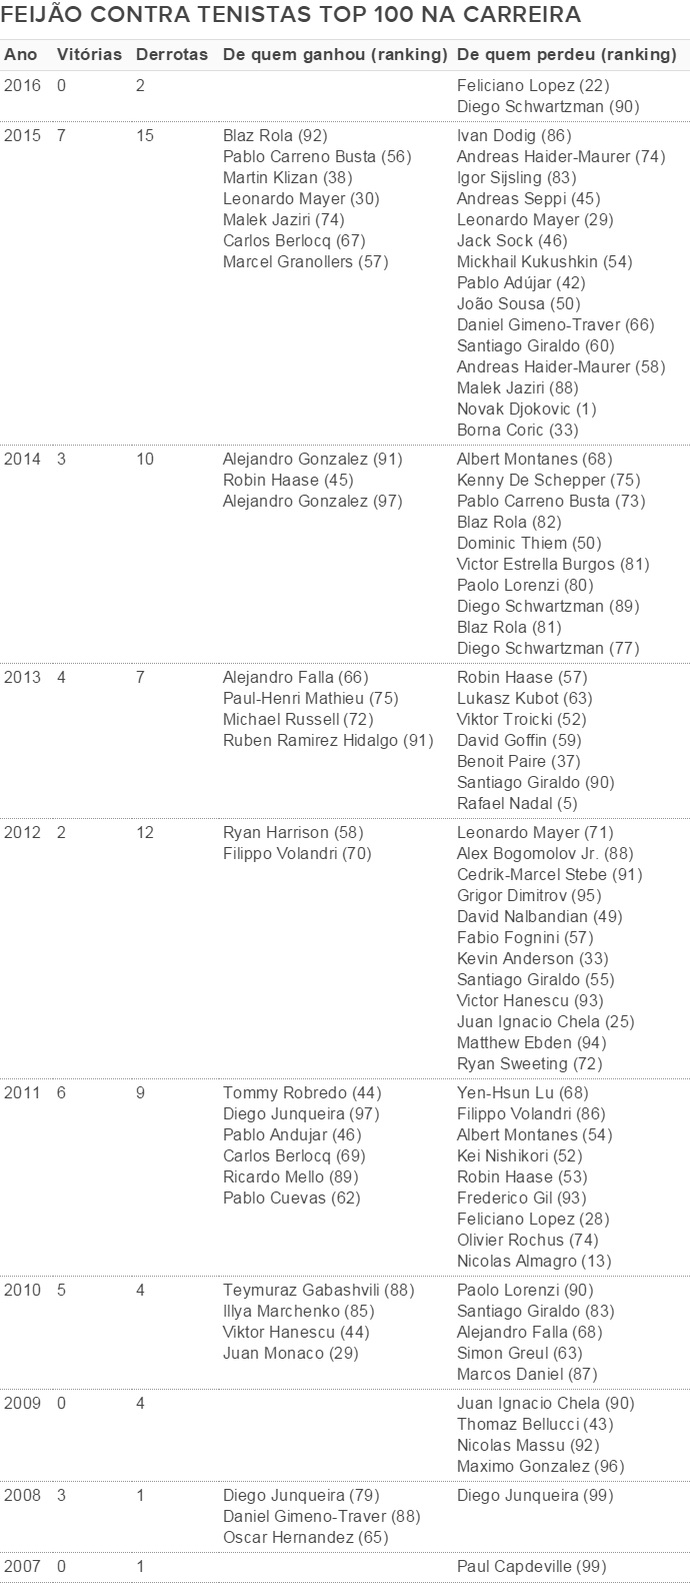 Tabela Feijão contra tenistas top 100 (Foto: GloboEsporte.com)